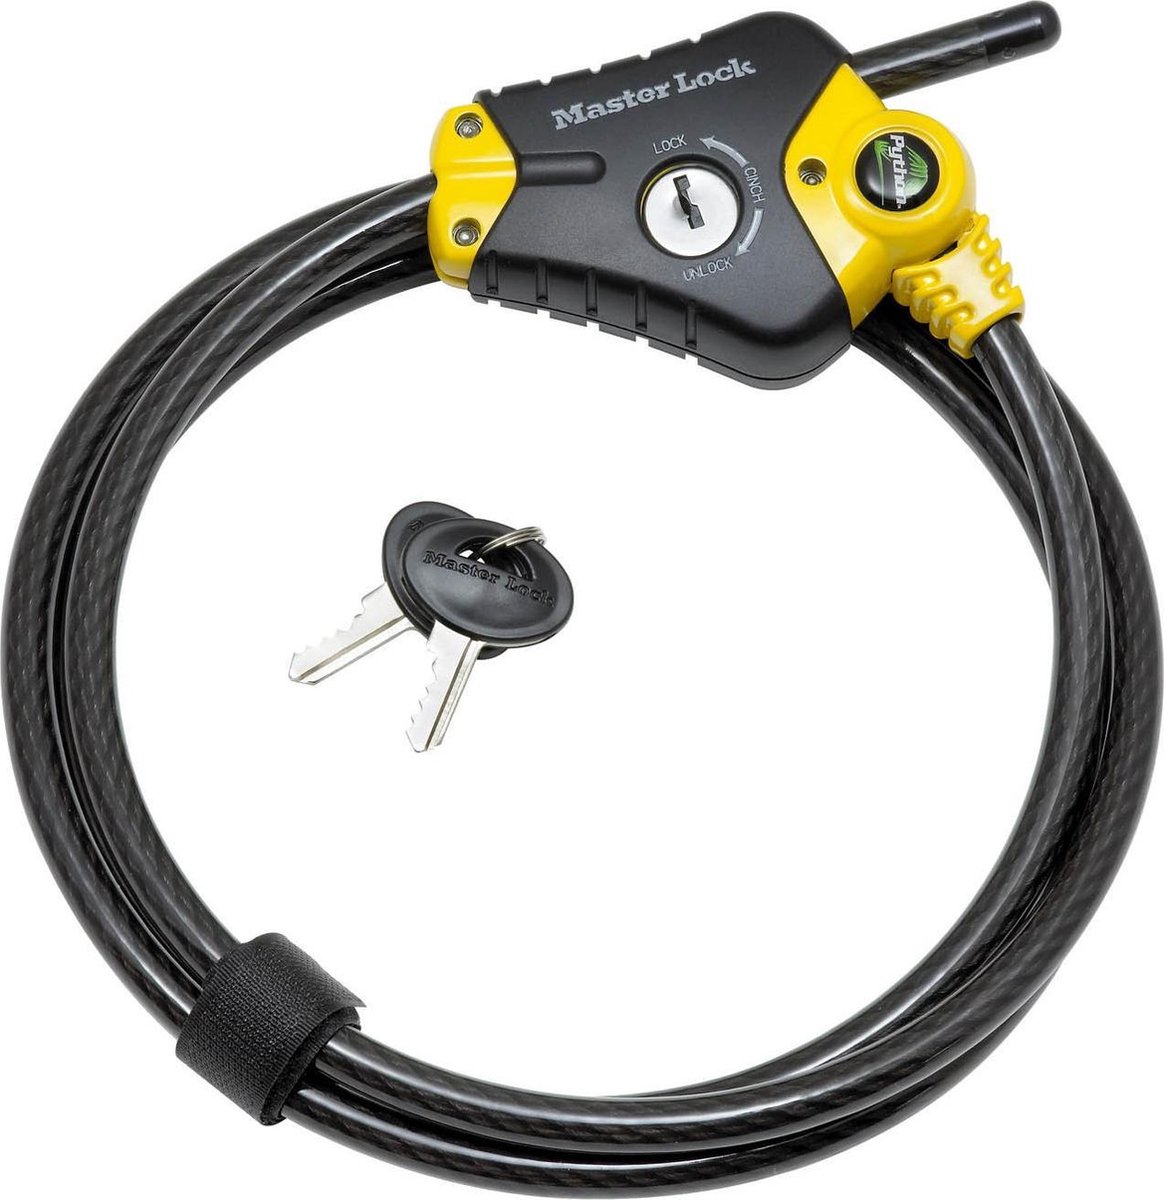 Masterlock Adjustable locking cable 4,50 m x Ø 10 mm - 4 keys